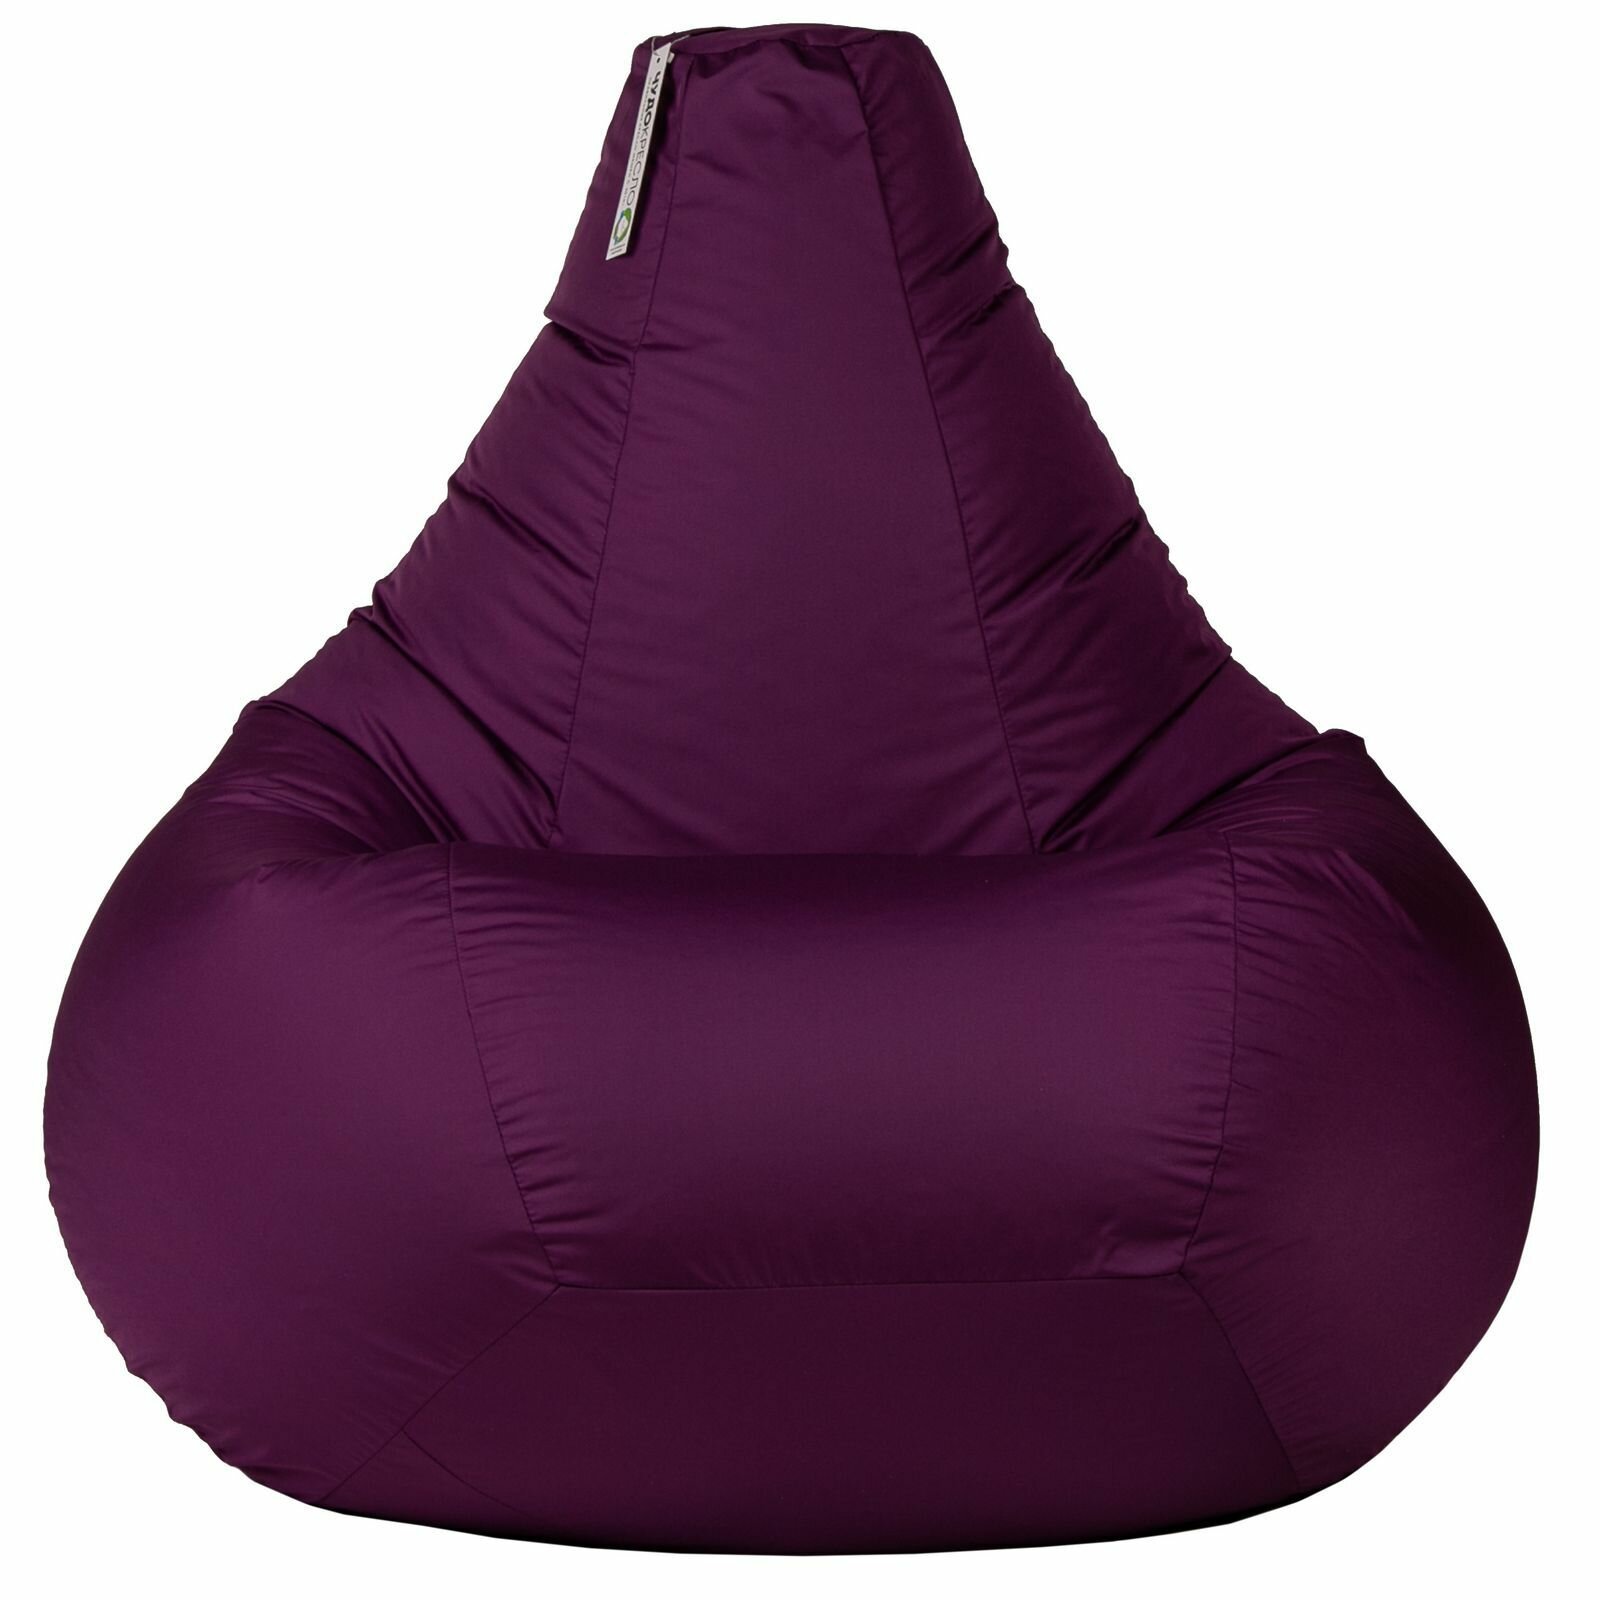 Кресло мешок Нейлон фиолетовый 120*80 размер XXL кресло груша кресло мешок детское кресло-мешок для улицы и дома в детскую мягкое кресло